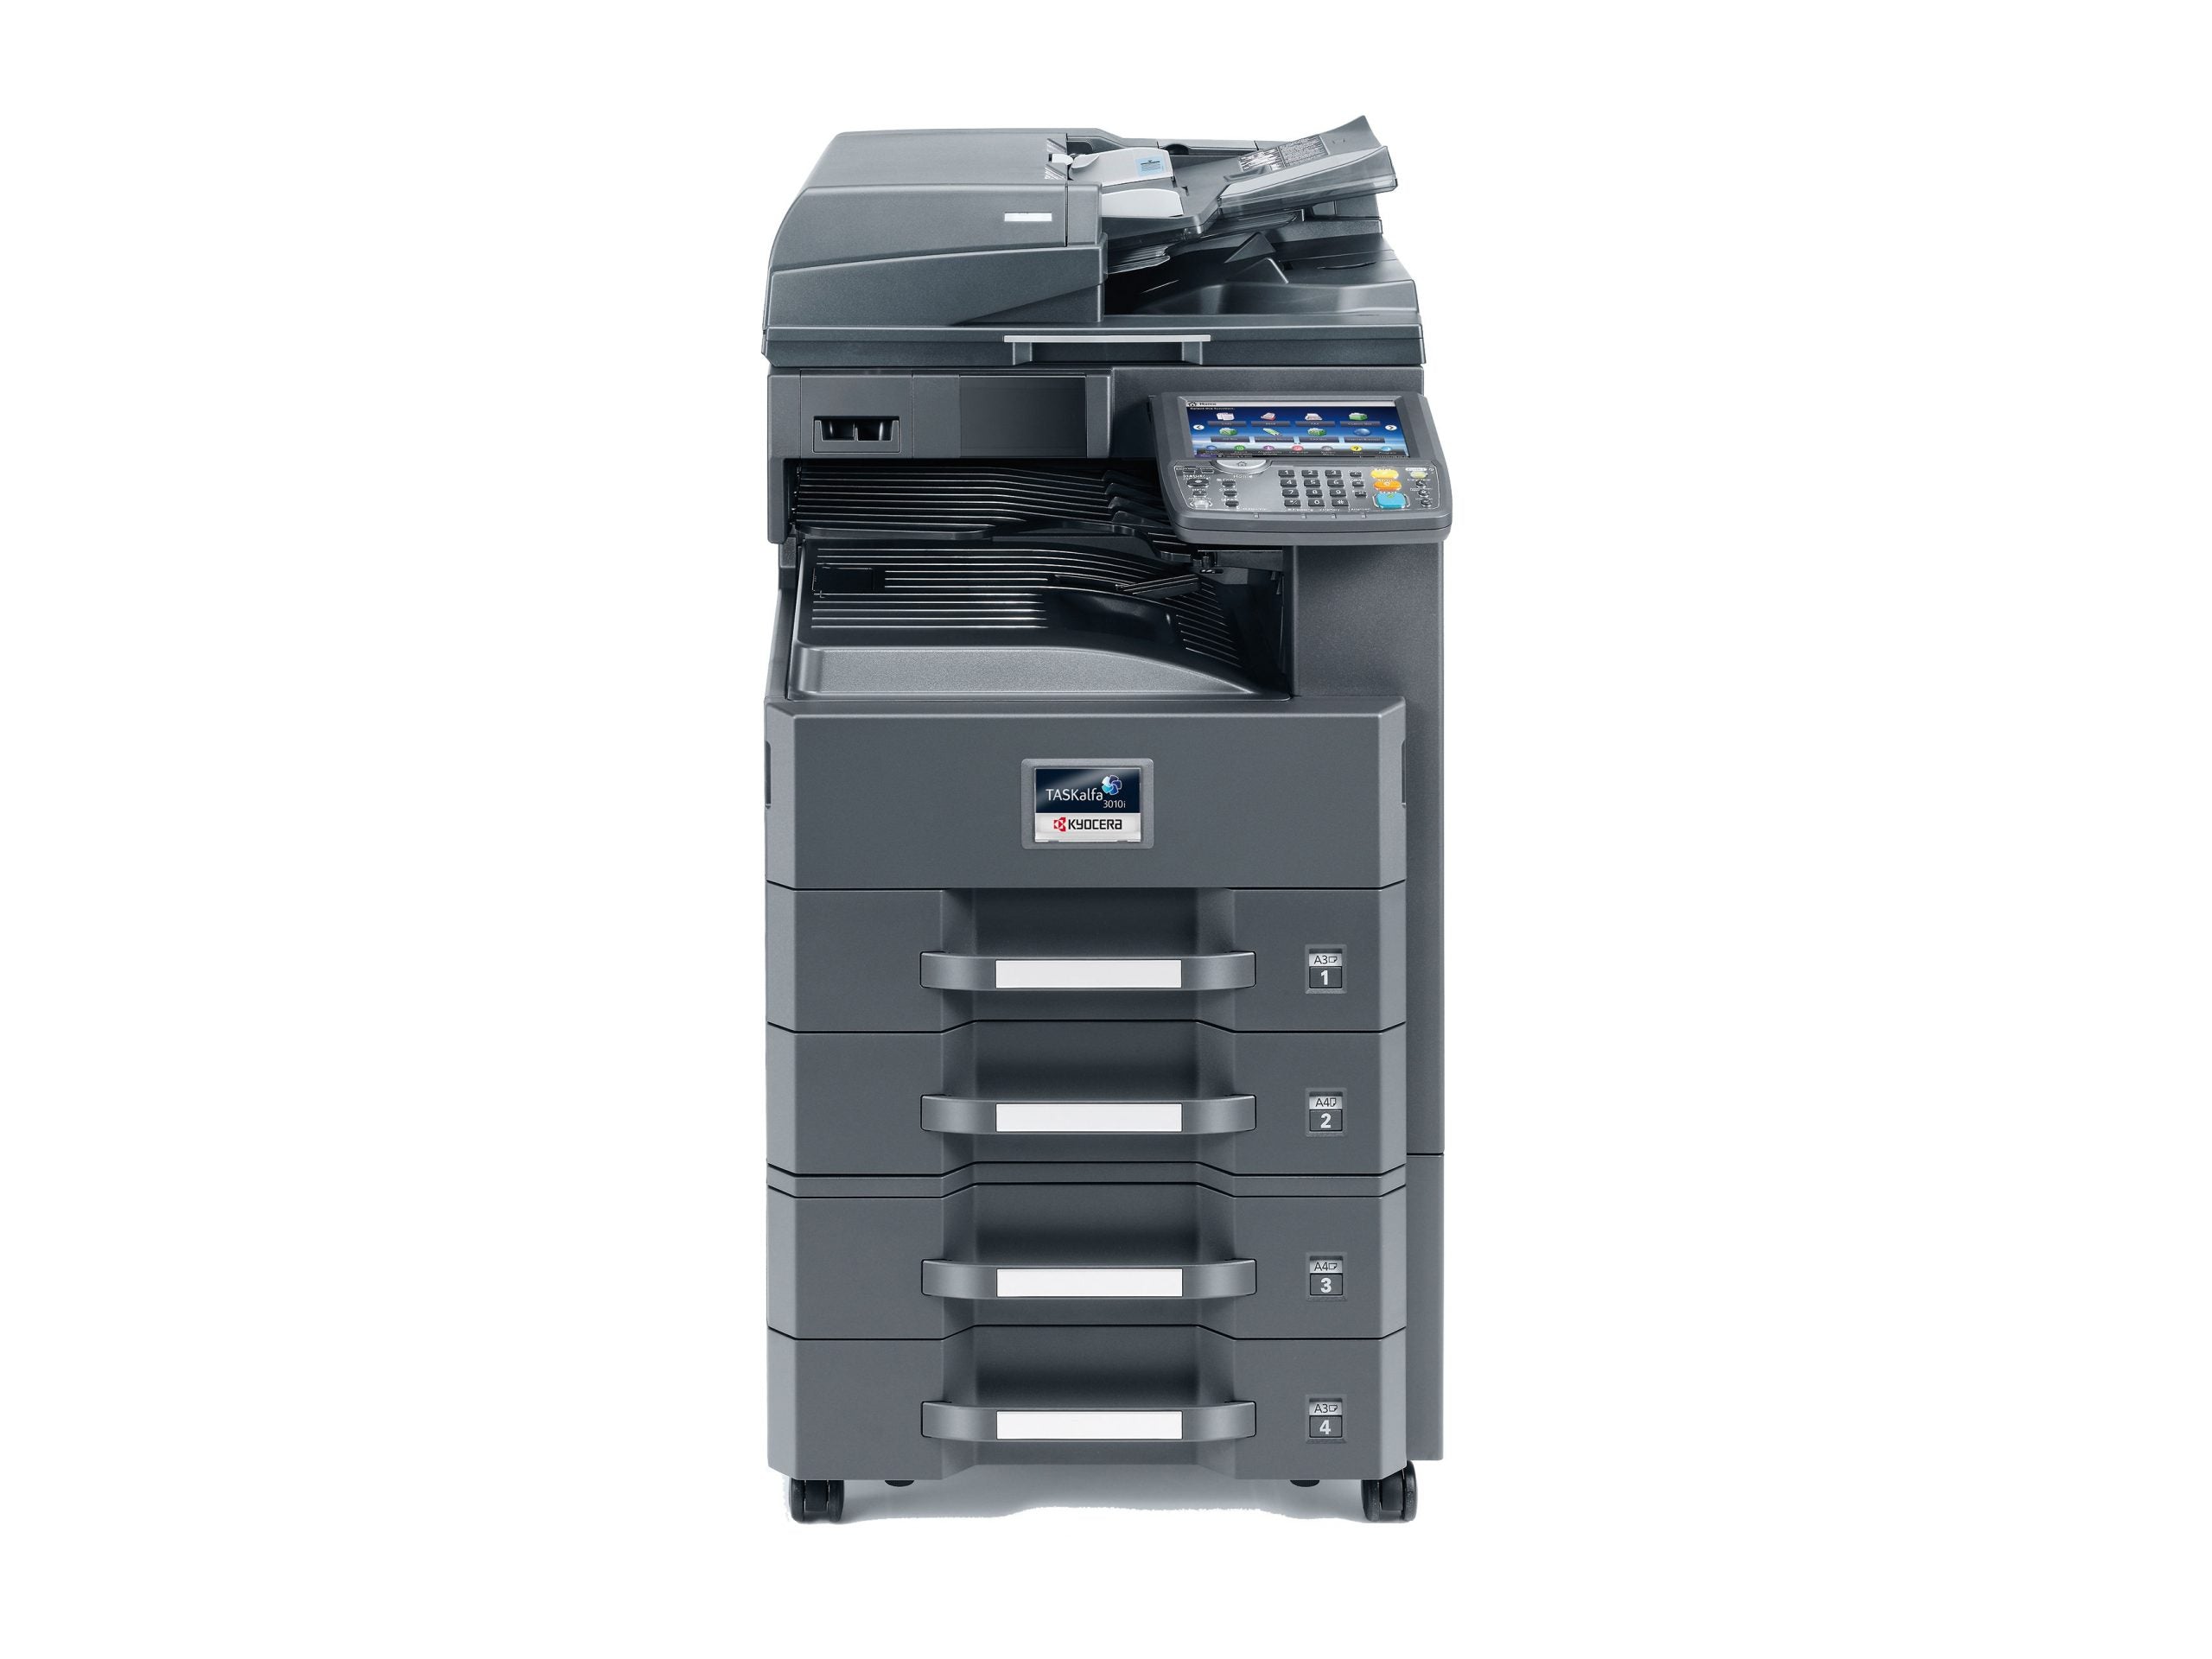 Kyocera Taskalfa 3510I Multifunzione Laser Bianco e Nero, Funzione Stampa/Copia fax